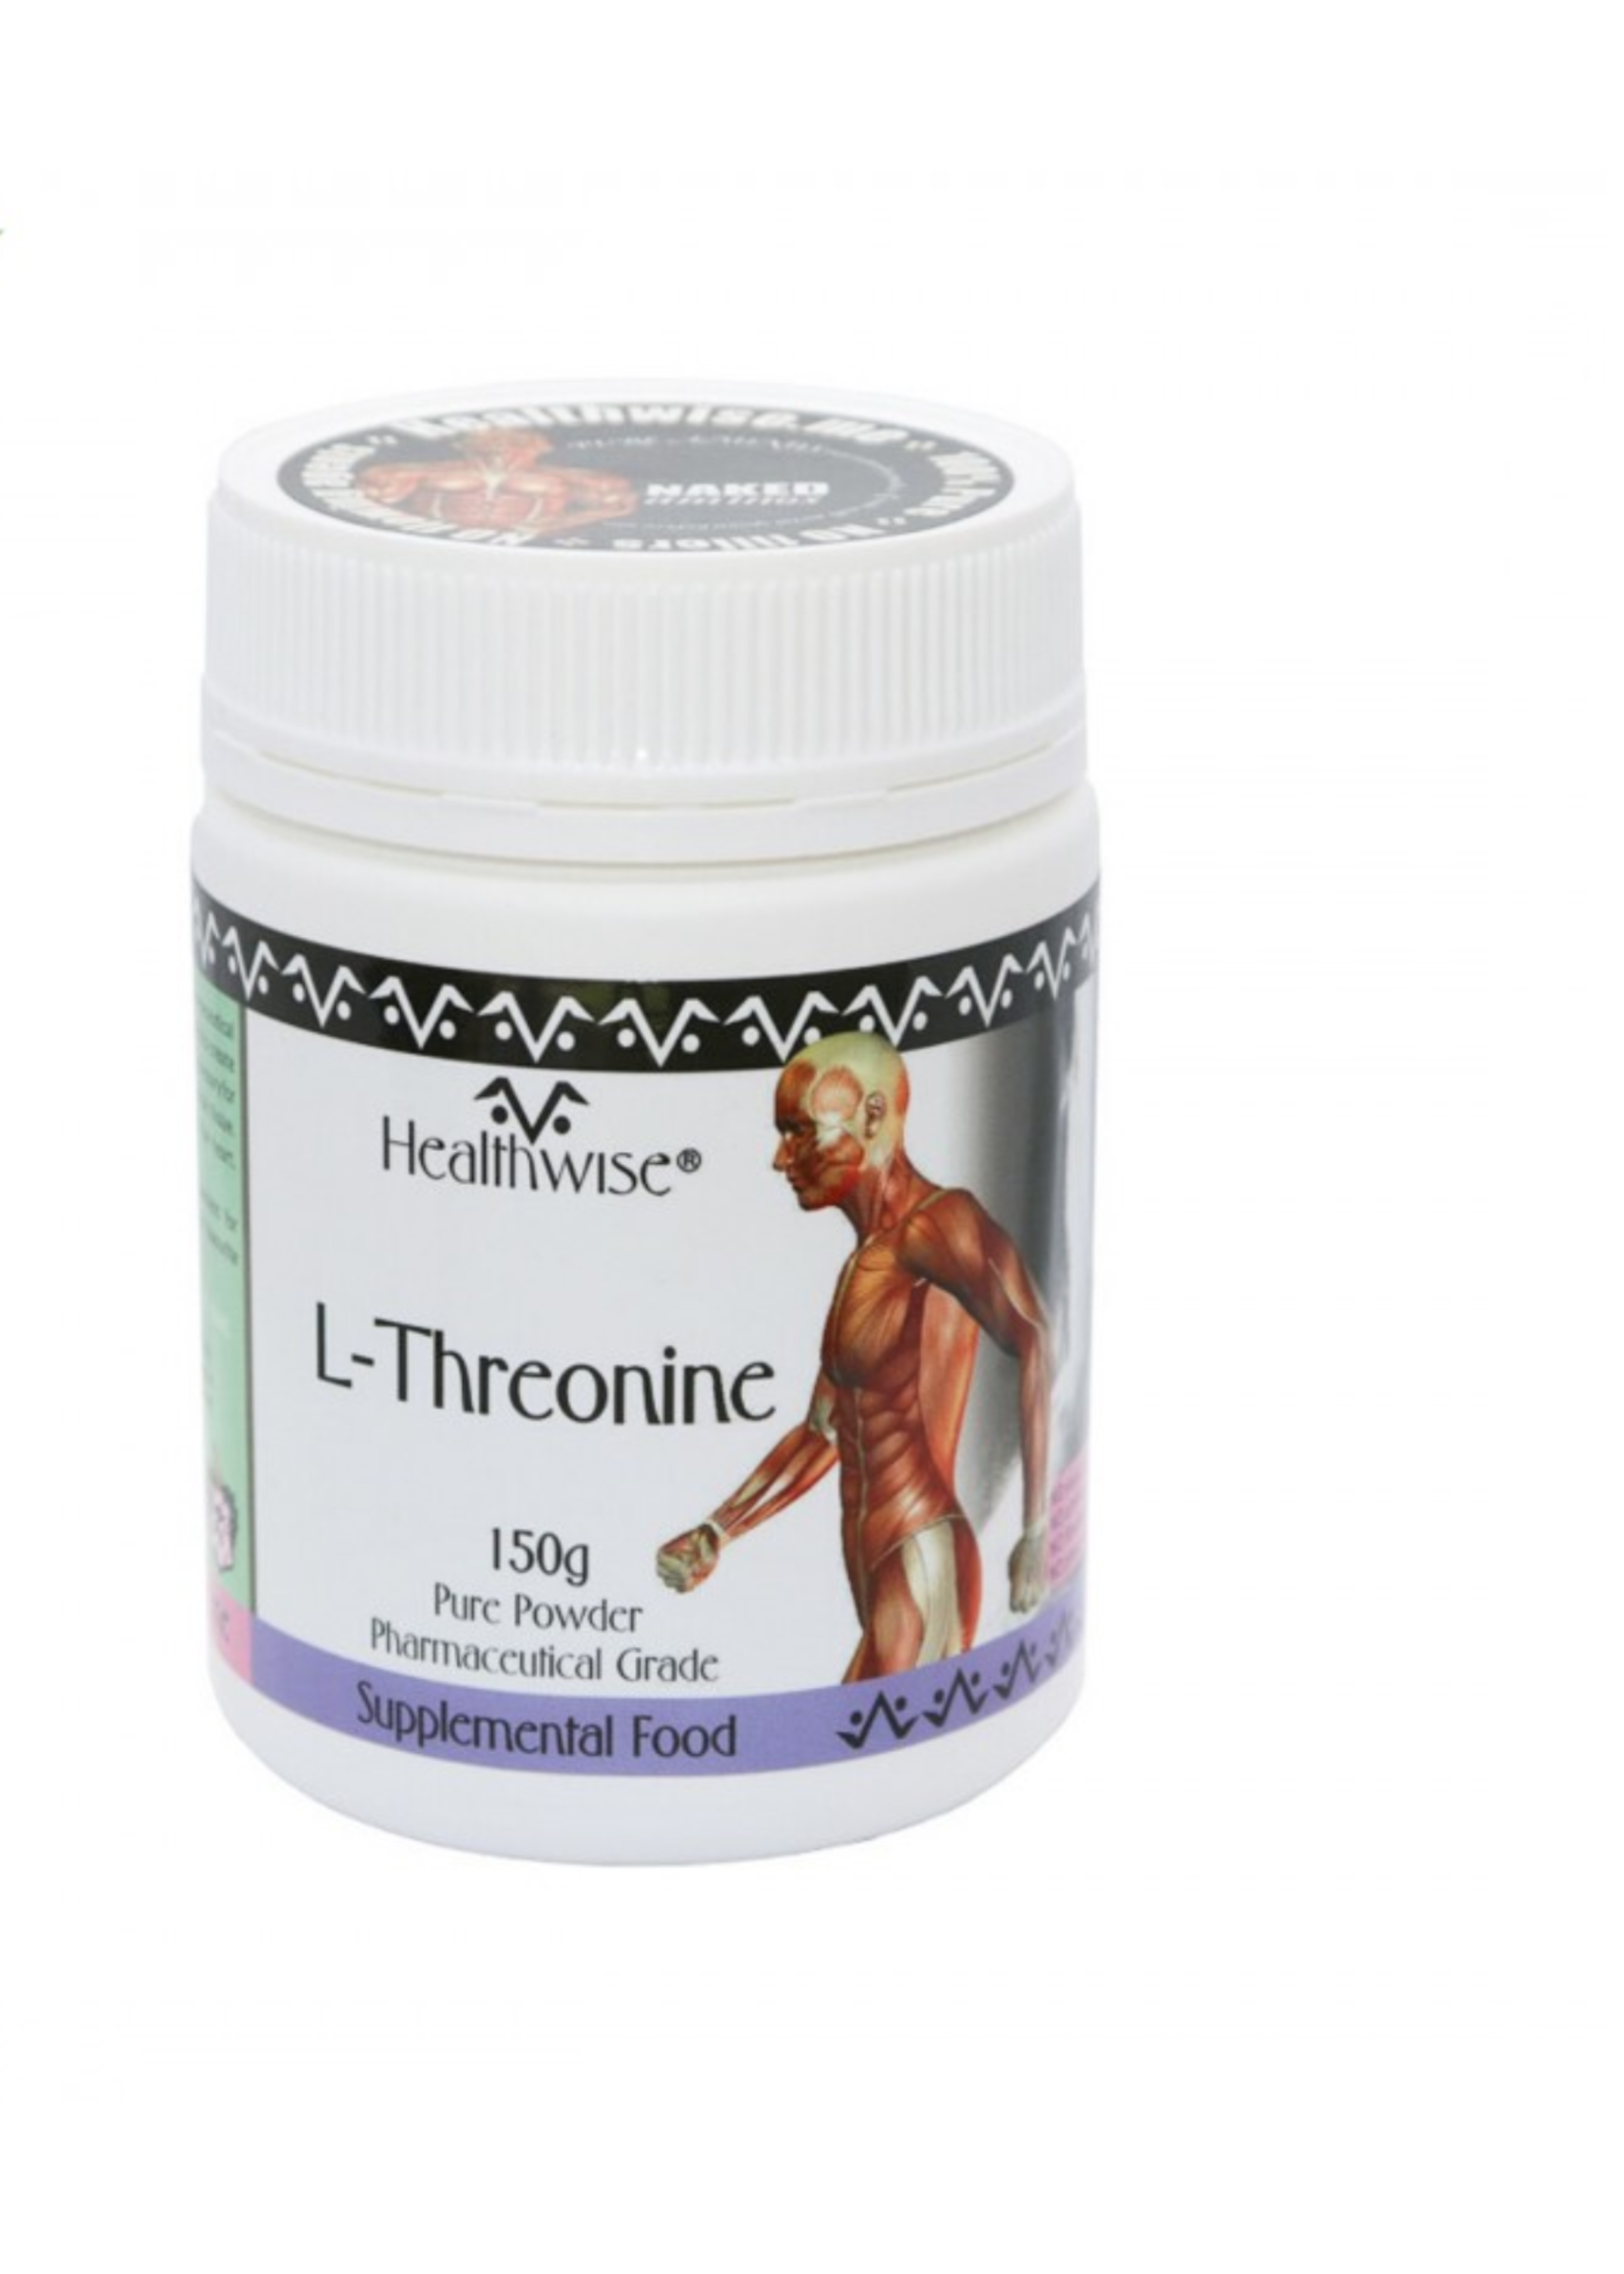 HEALTHWISE Healthwise Threonine 150gms